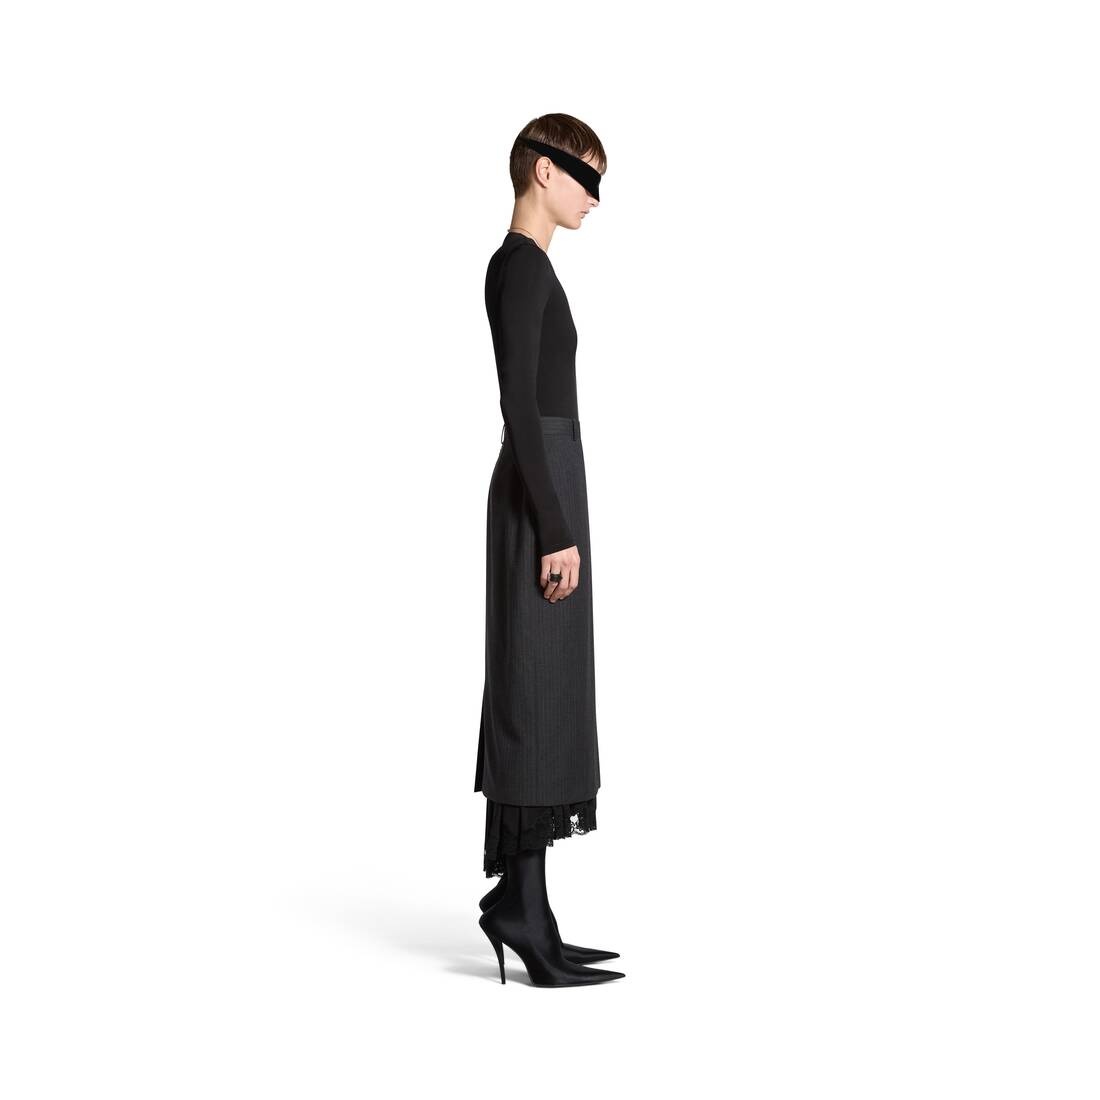 Women's Lingerie Tailored Skirt in Dark Grey - 3